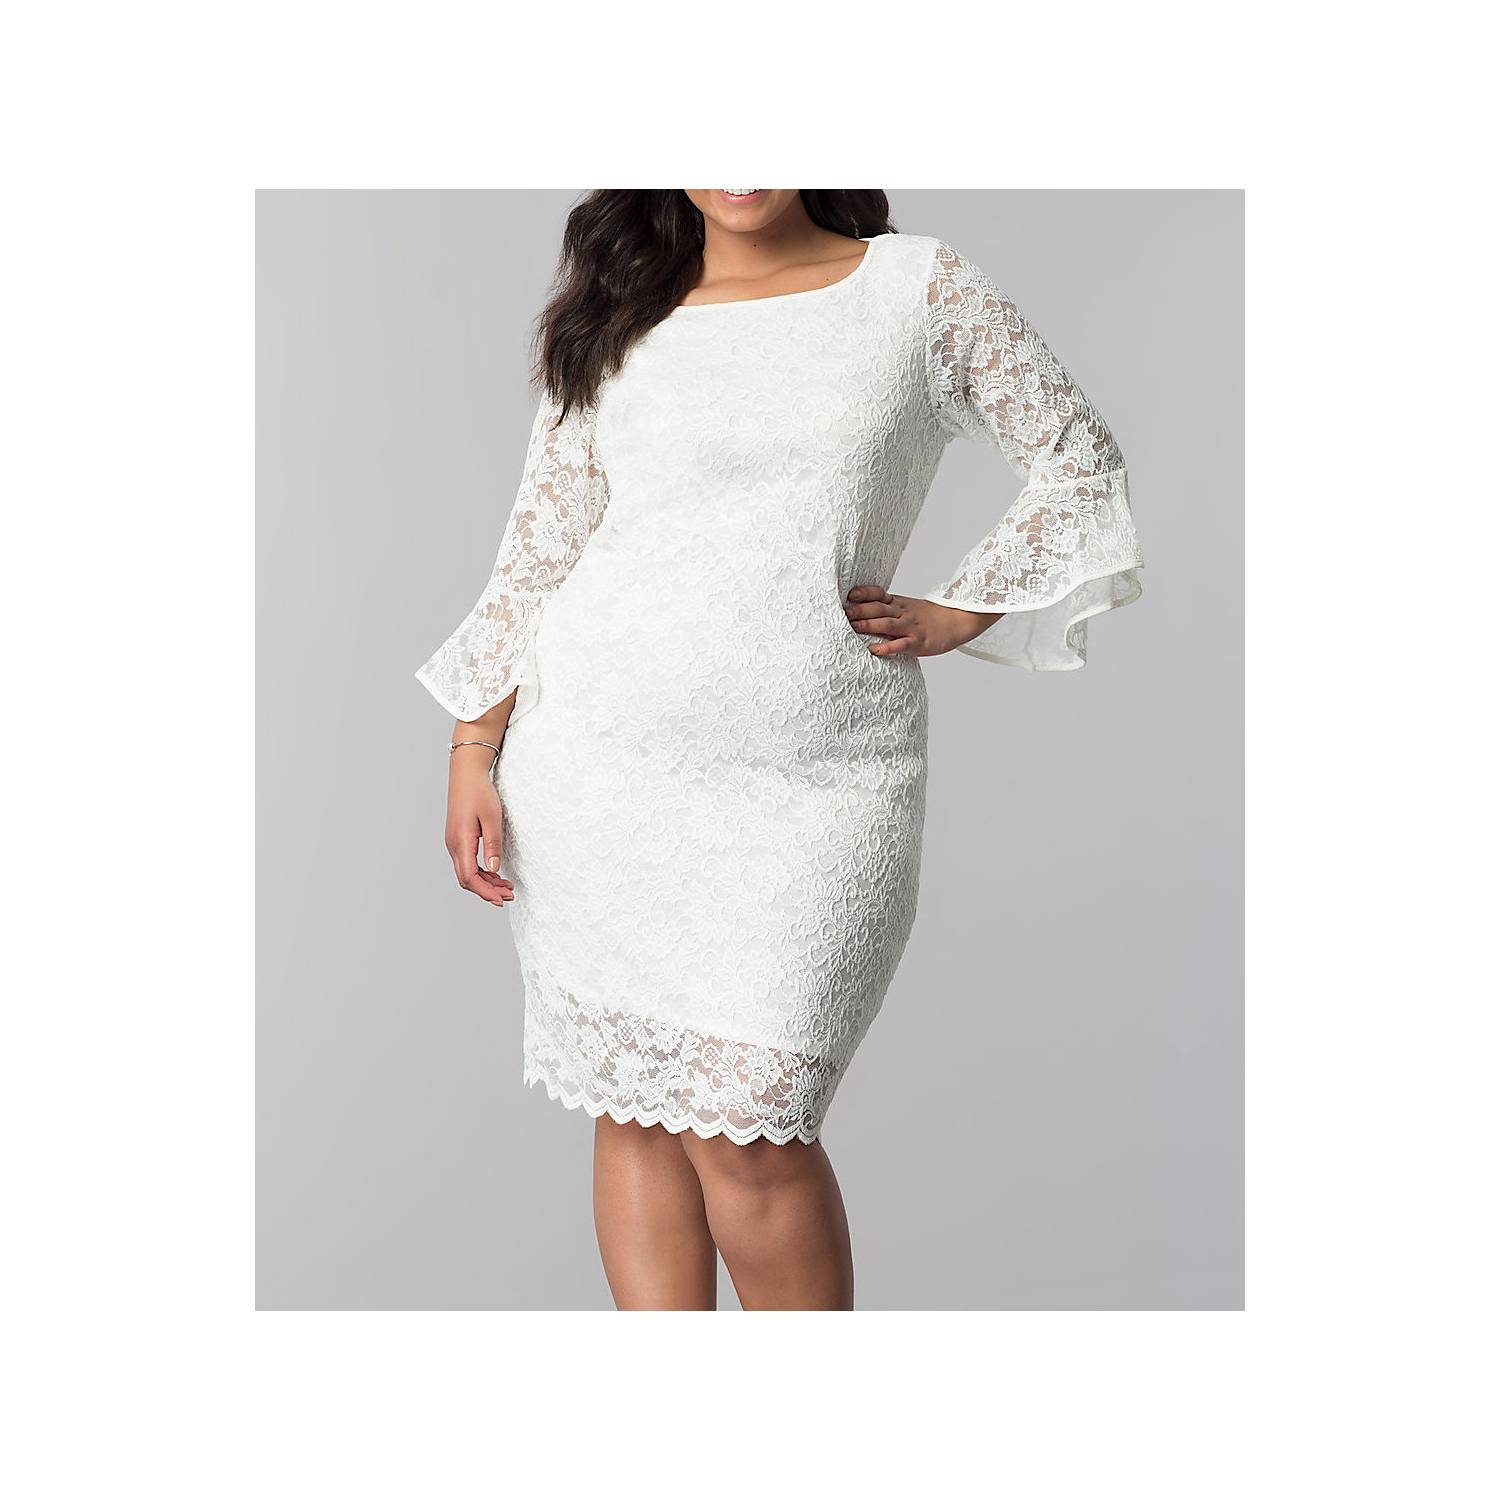 HENNE CLOTHING de civil blanco corto - boda - matrimonios y fiestas | falabella.com